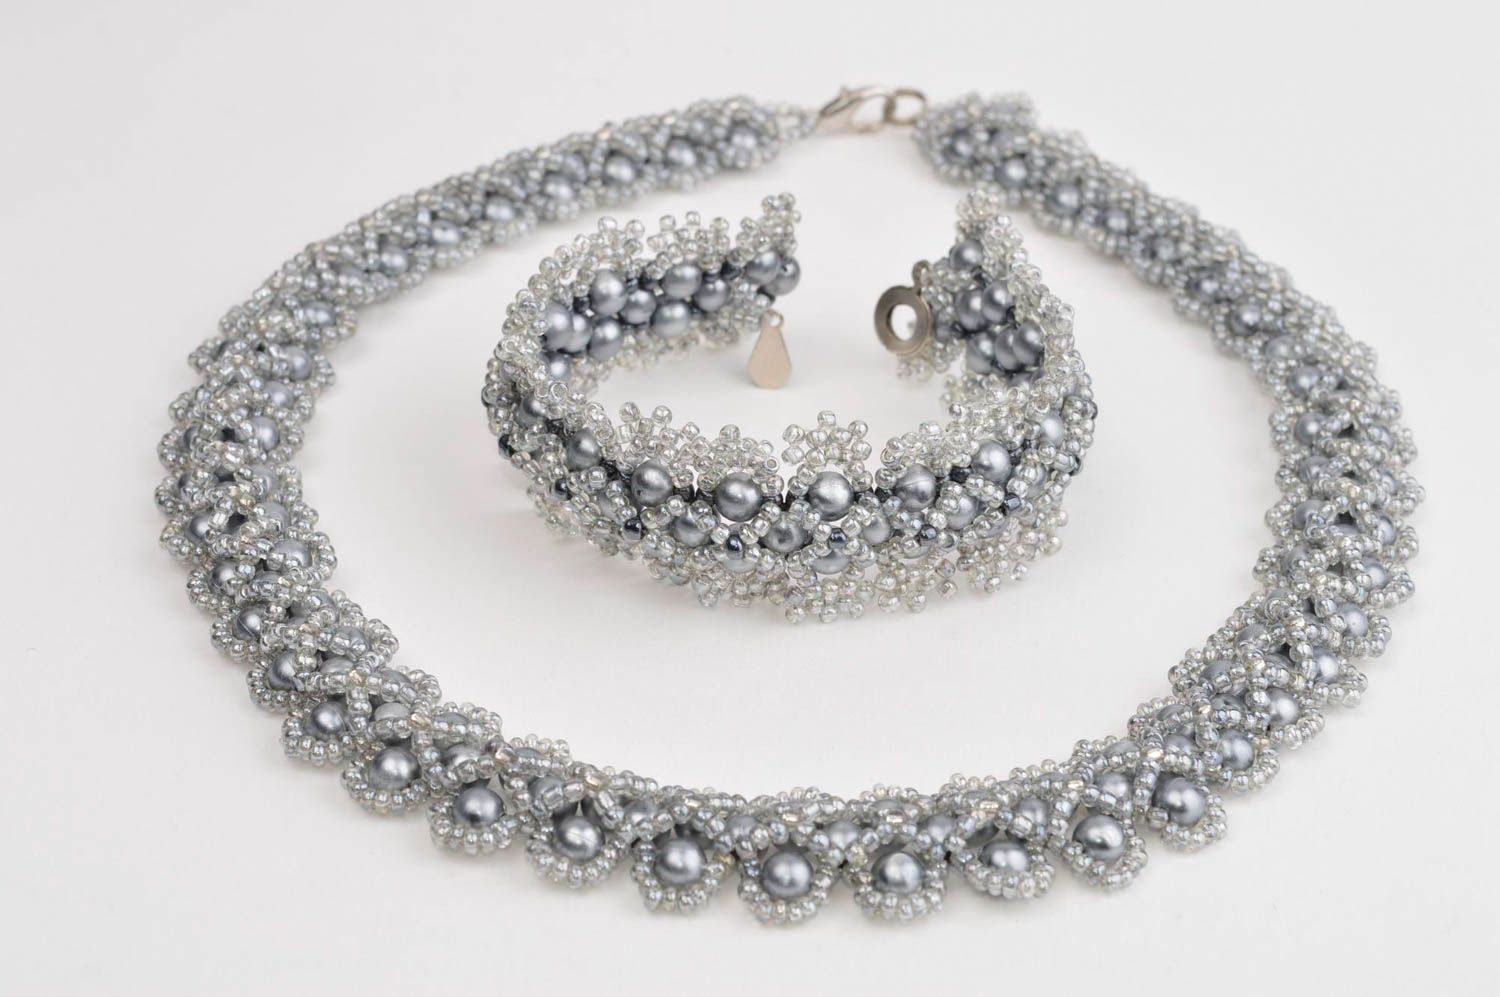 Beautiful handmade necklace designer beaded bracelet stylish unusual jewelry photo 4